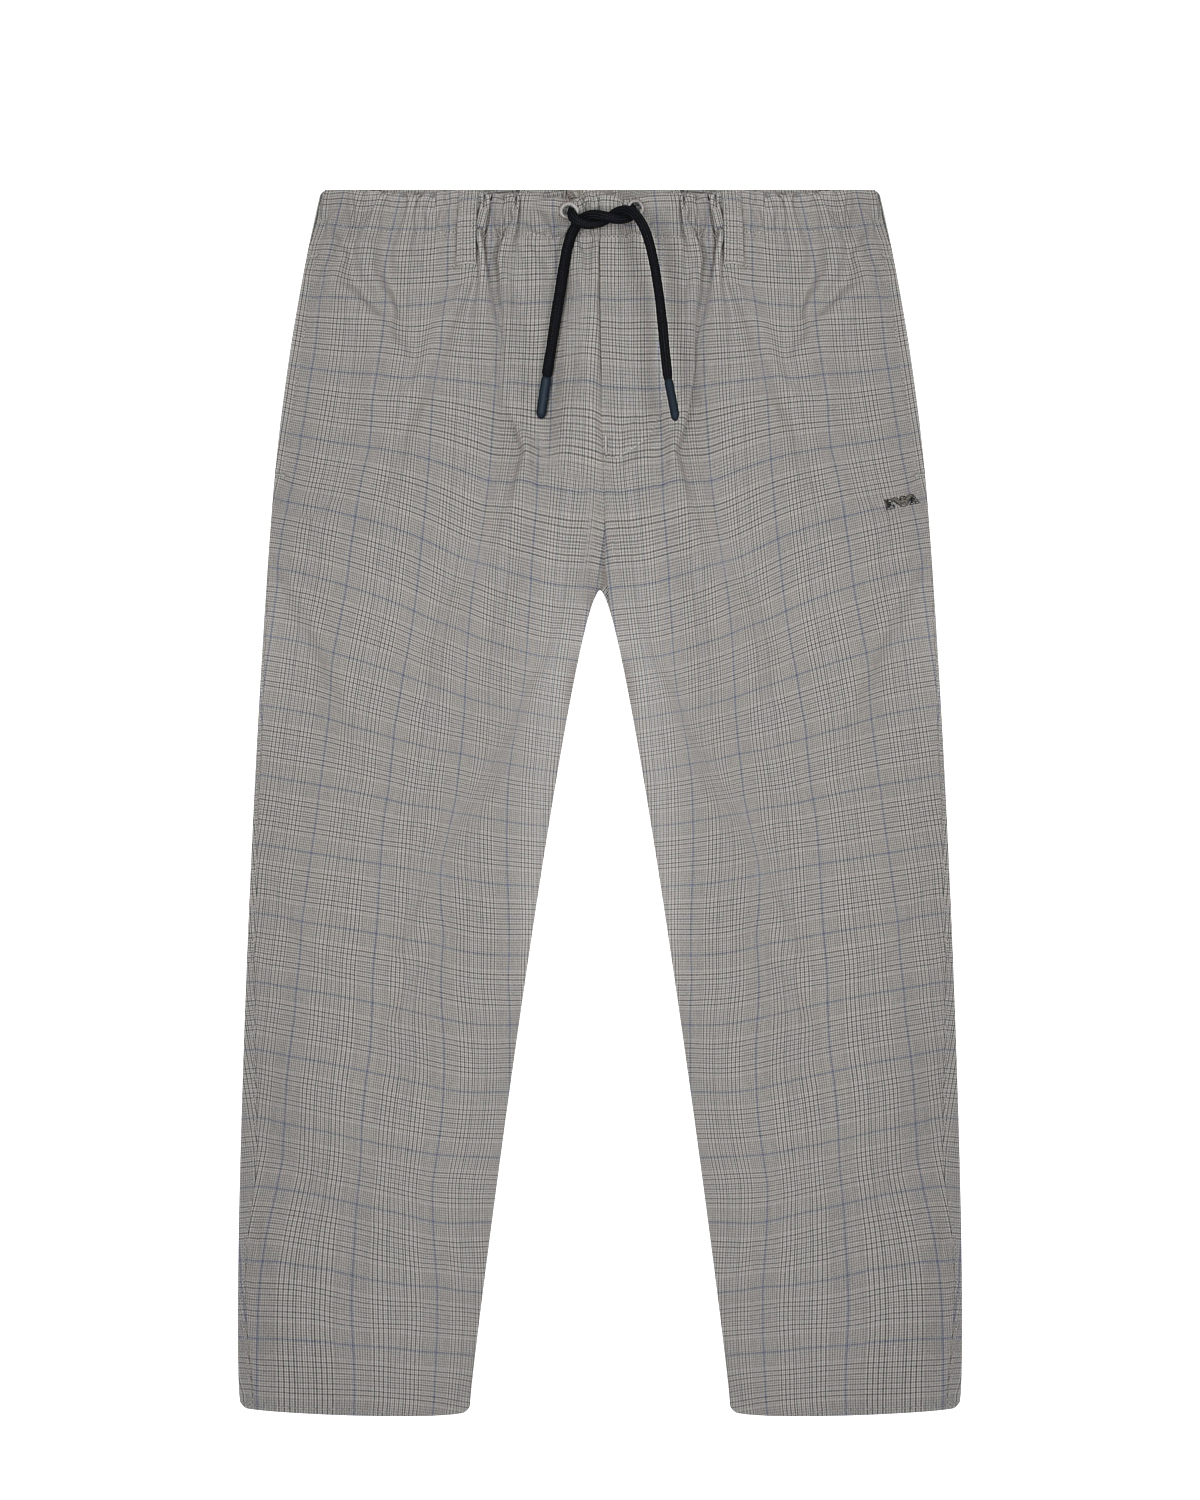 Бежевые брюки в клетку Emporio Armani, размер 110, цвет бежевый